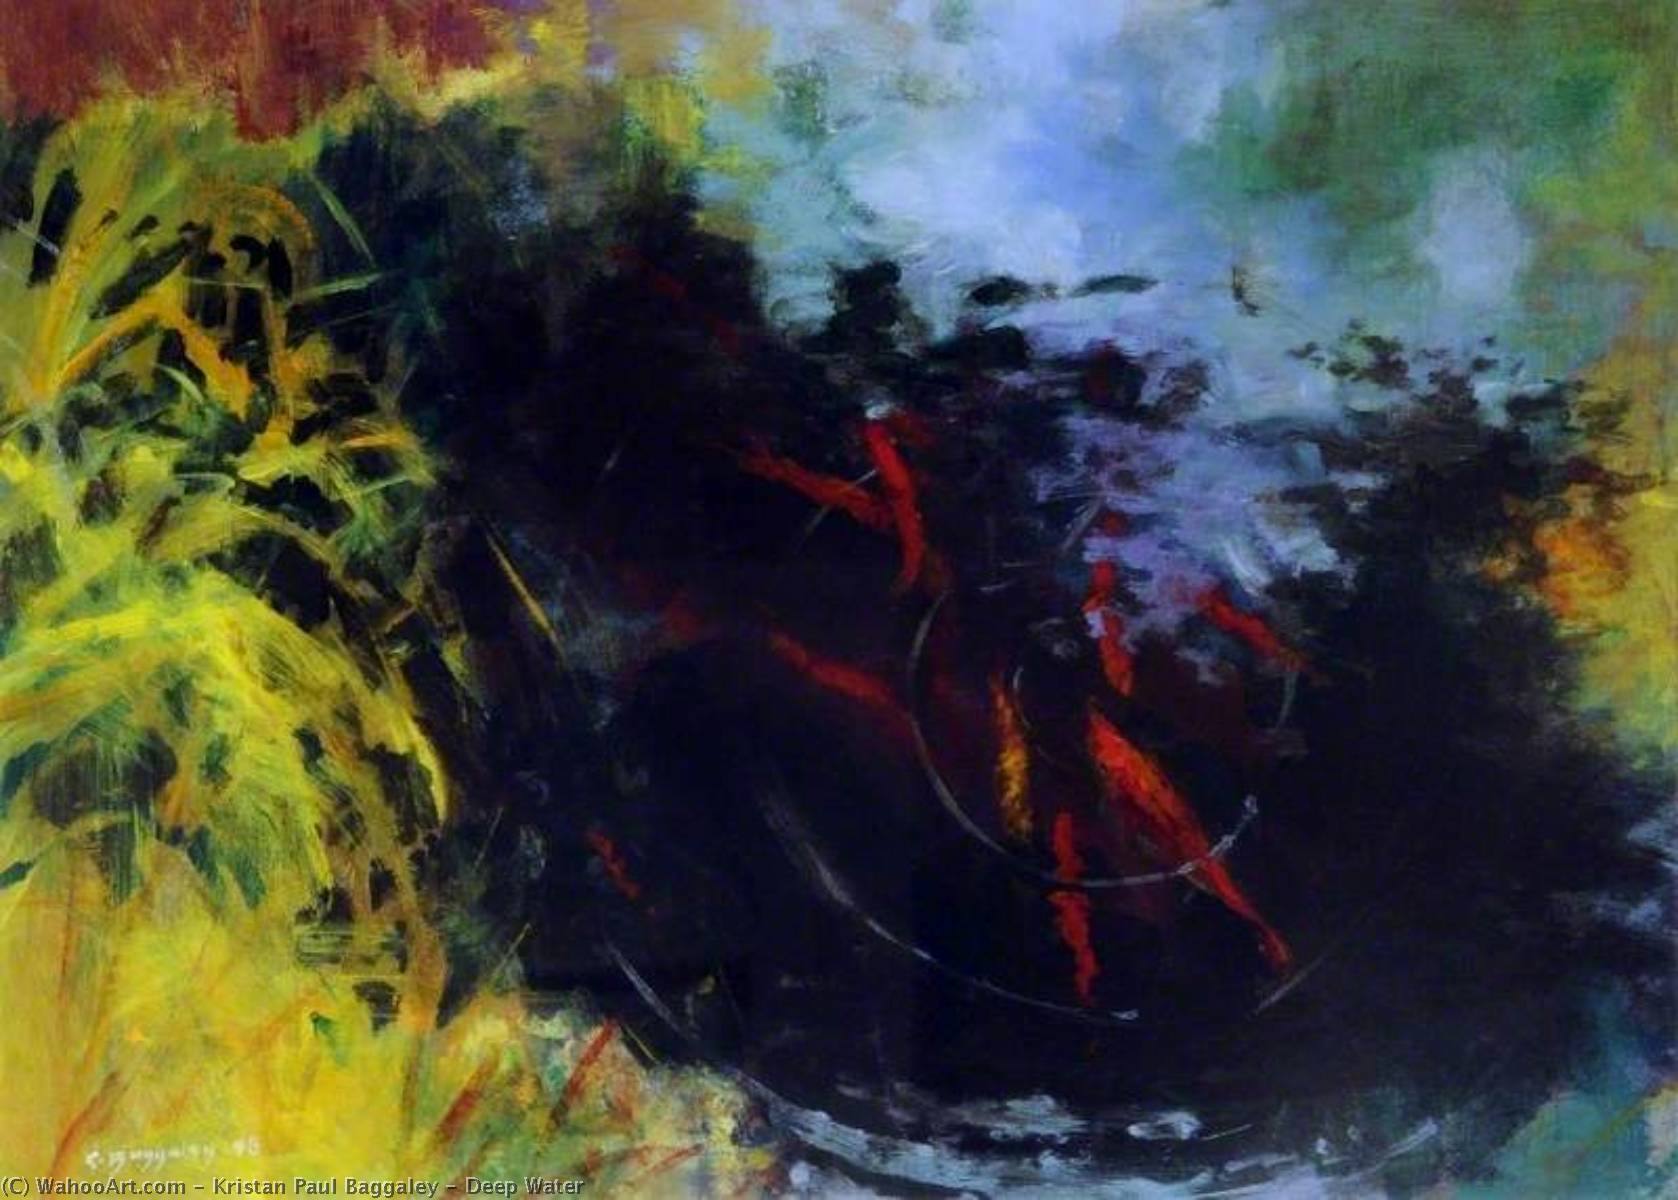 Deep Water, 1998 by Kristan Paul Baggaley Kristan Paul Baggaley | ArtsDot.com